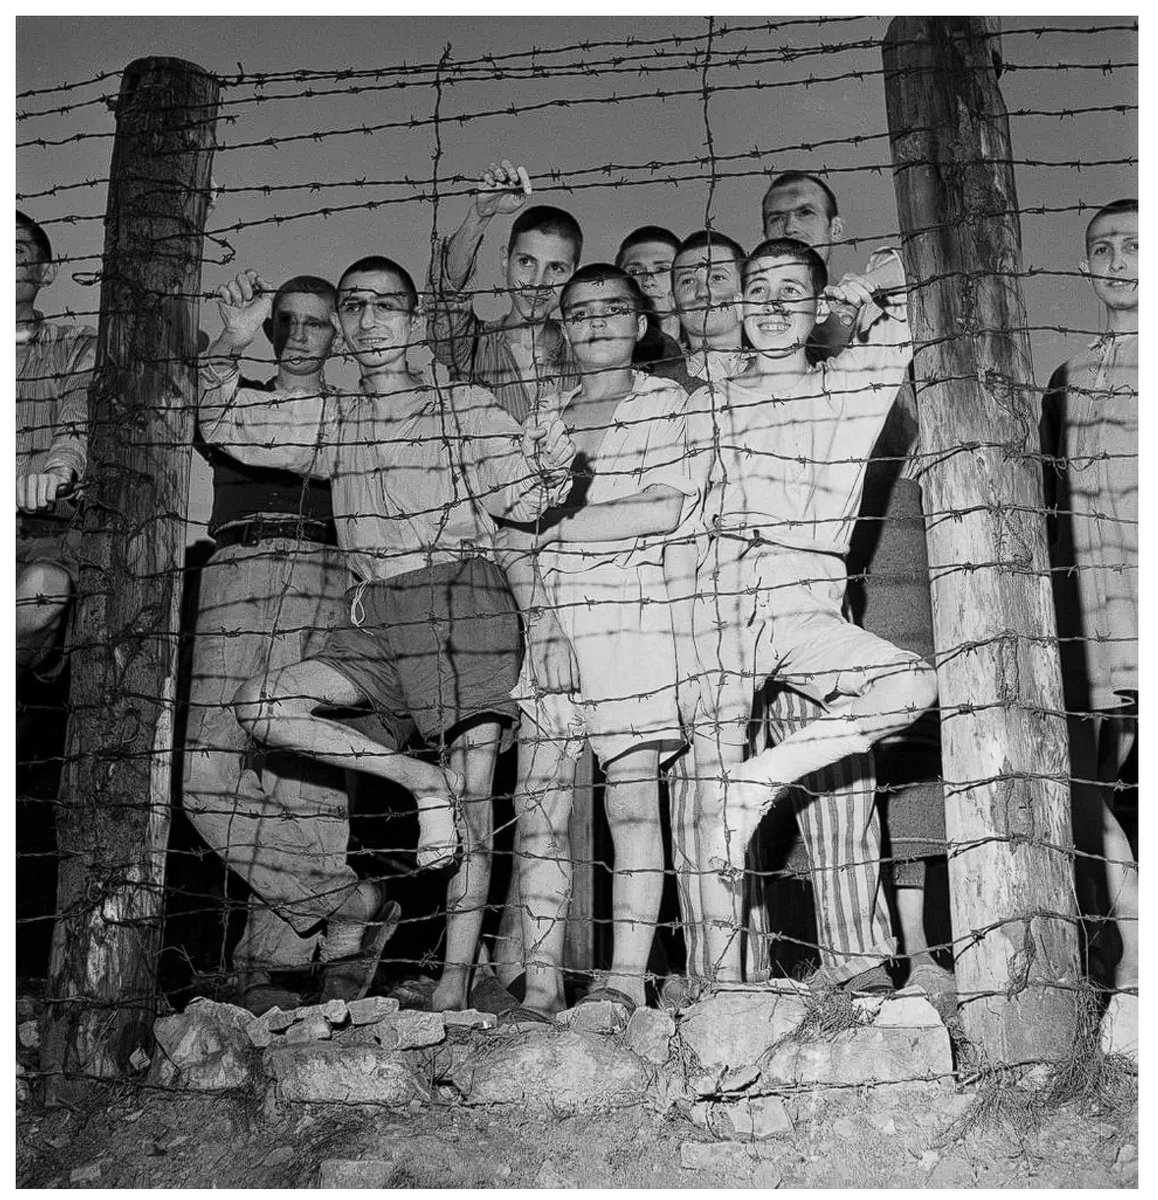 Buchenwald 29-04-1945

Zonder woorden